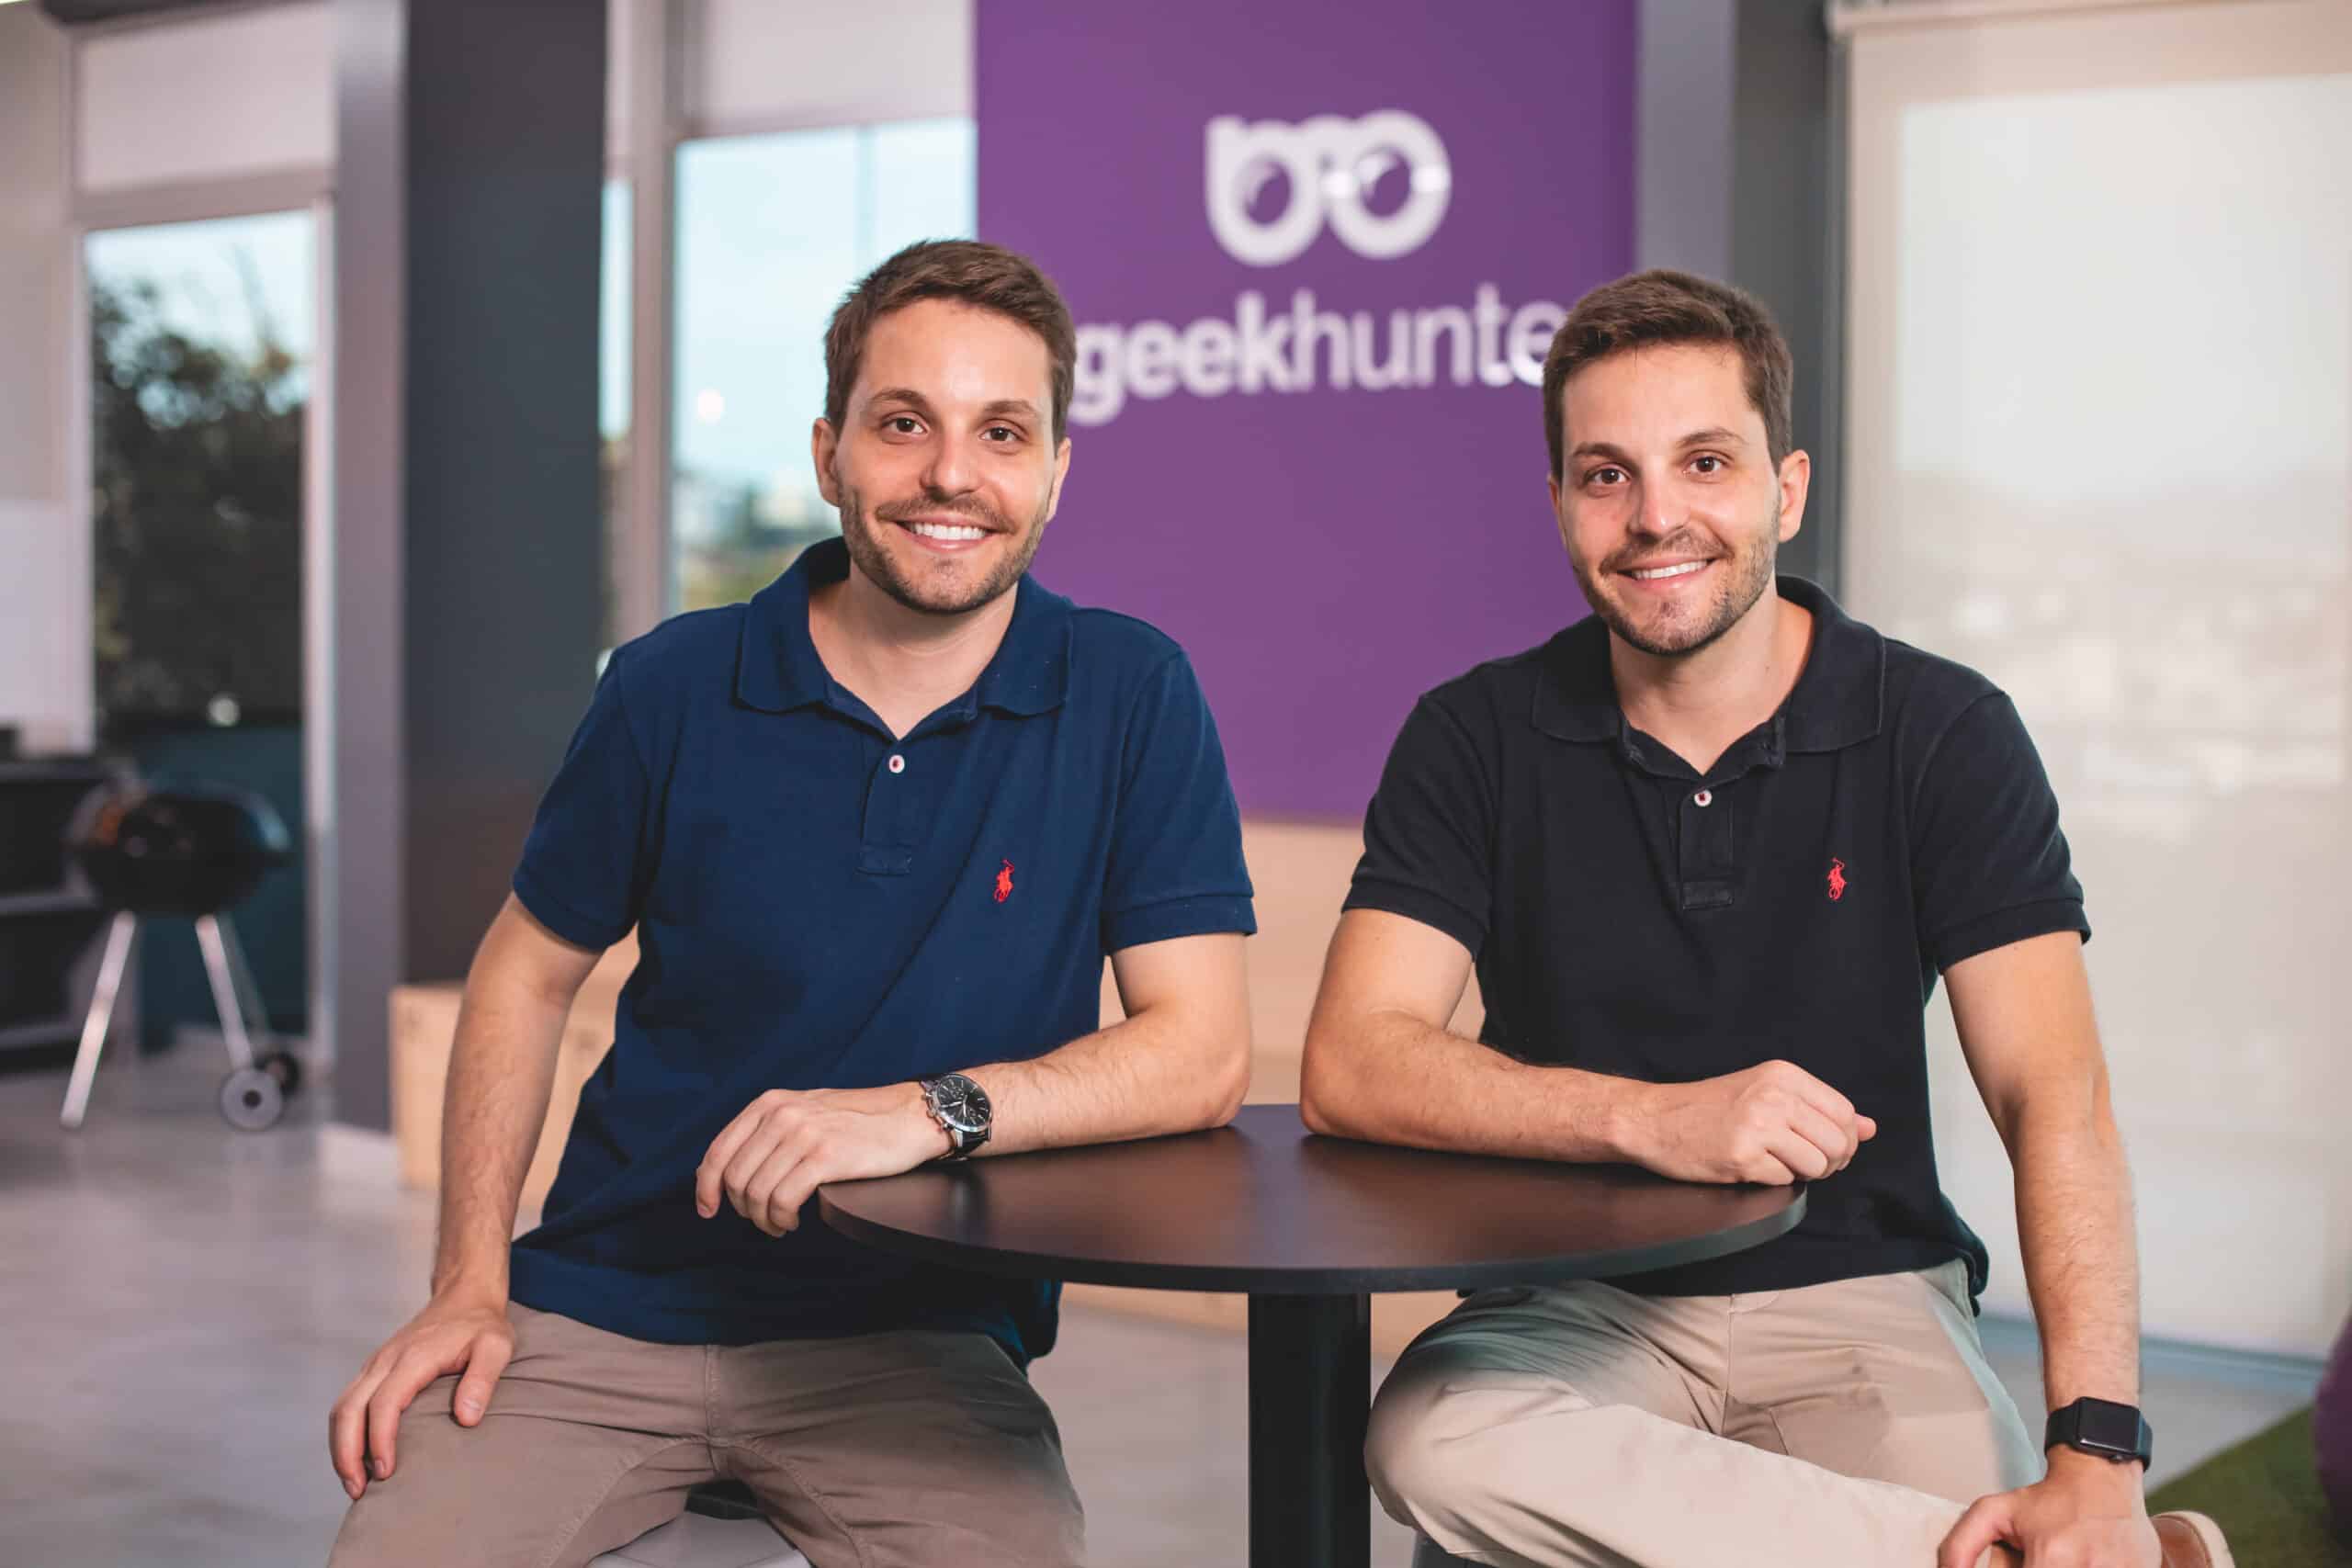 Fundada em 2015 pelos irmãos gêmeos Tomás e Celso Ferrari, a GeekHunter rapidamente se destacou com uma abordagem inovadora no recrutamento.